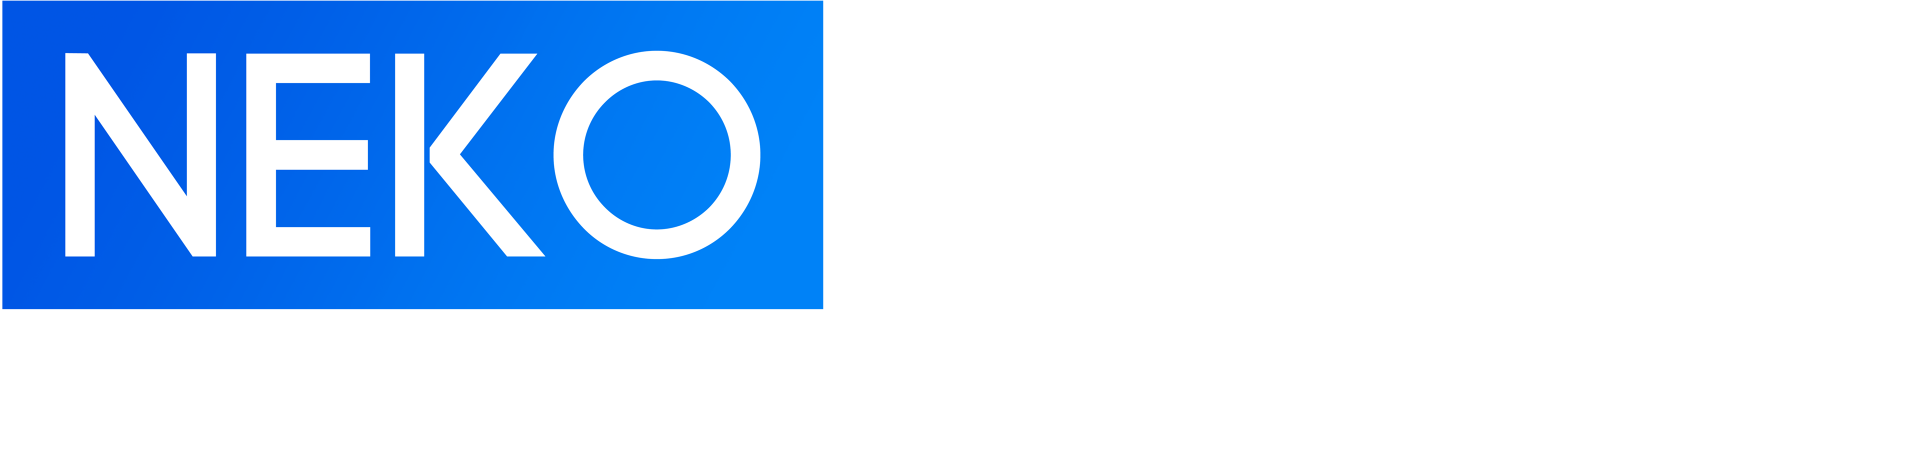 логотип neko franch